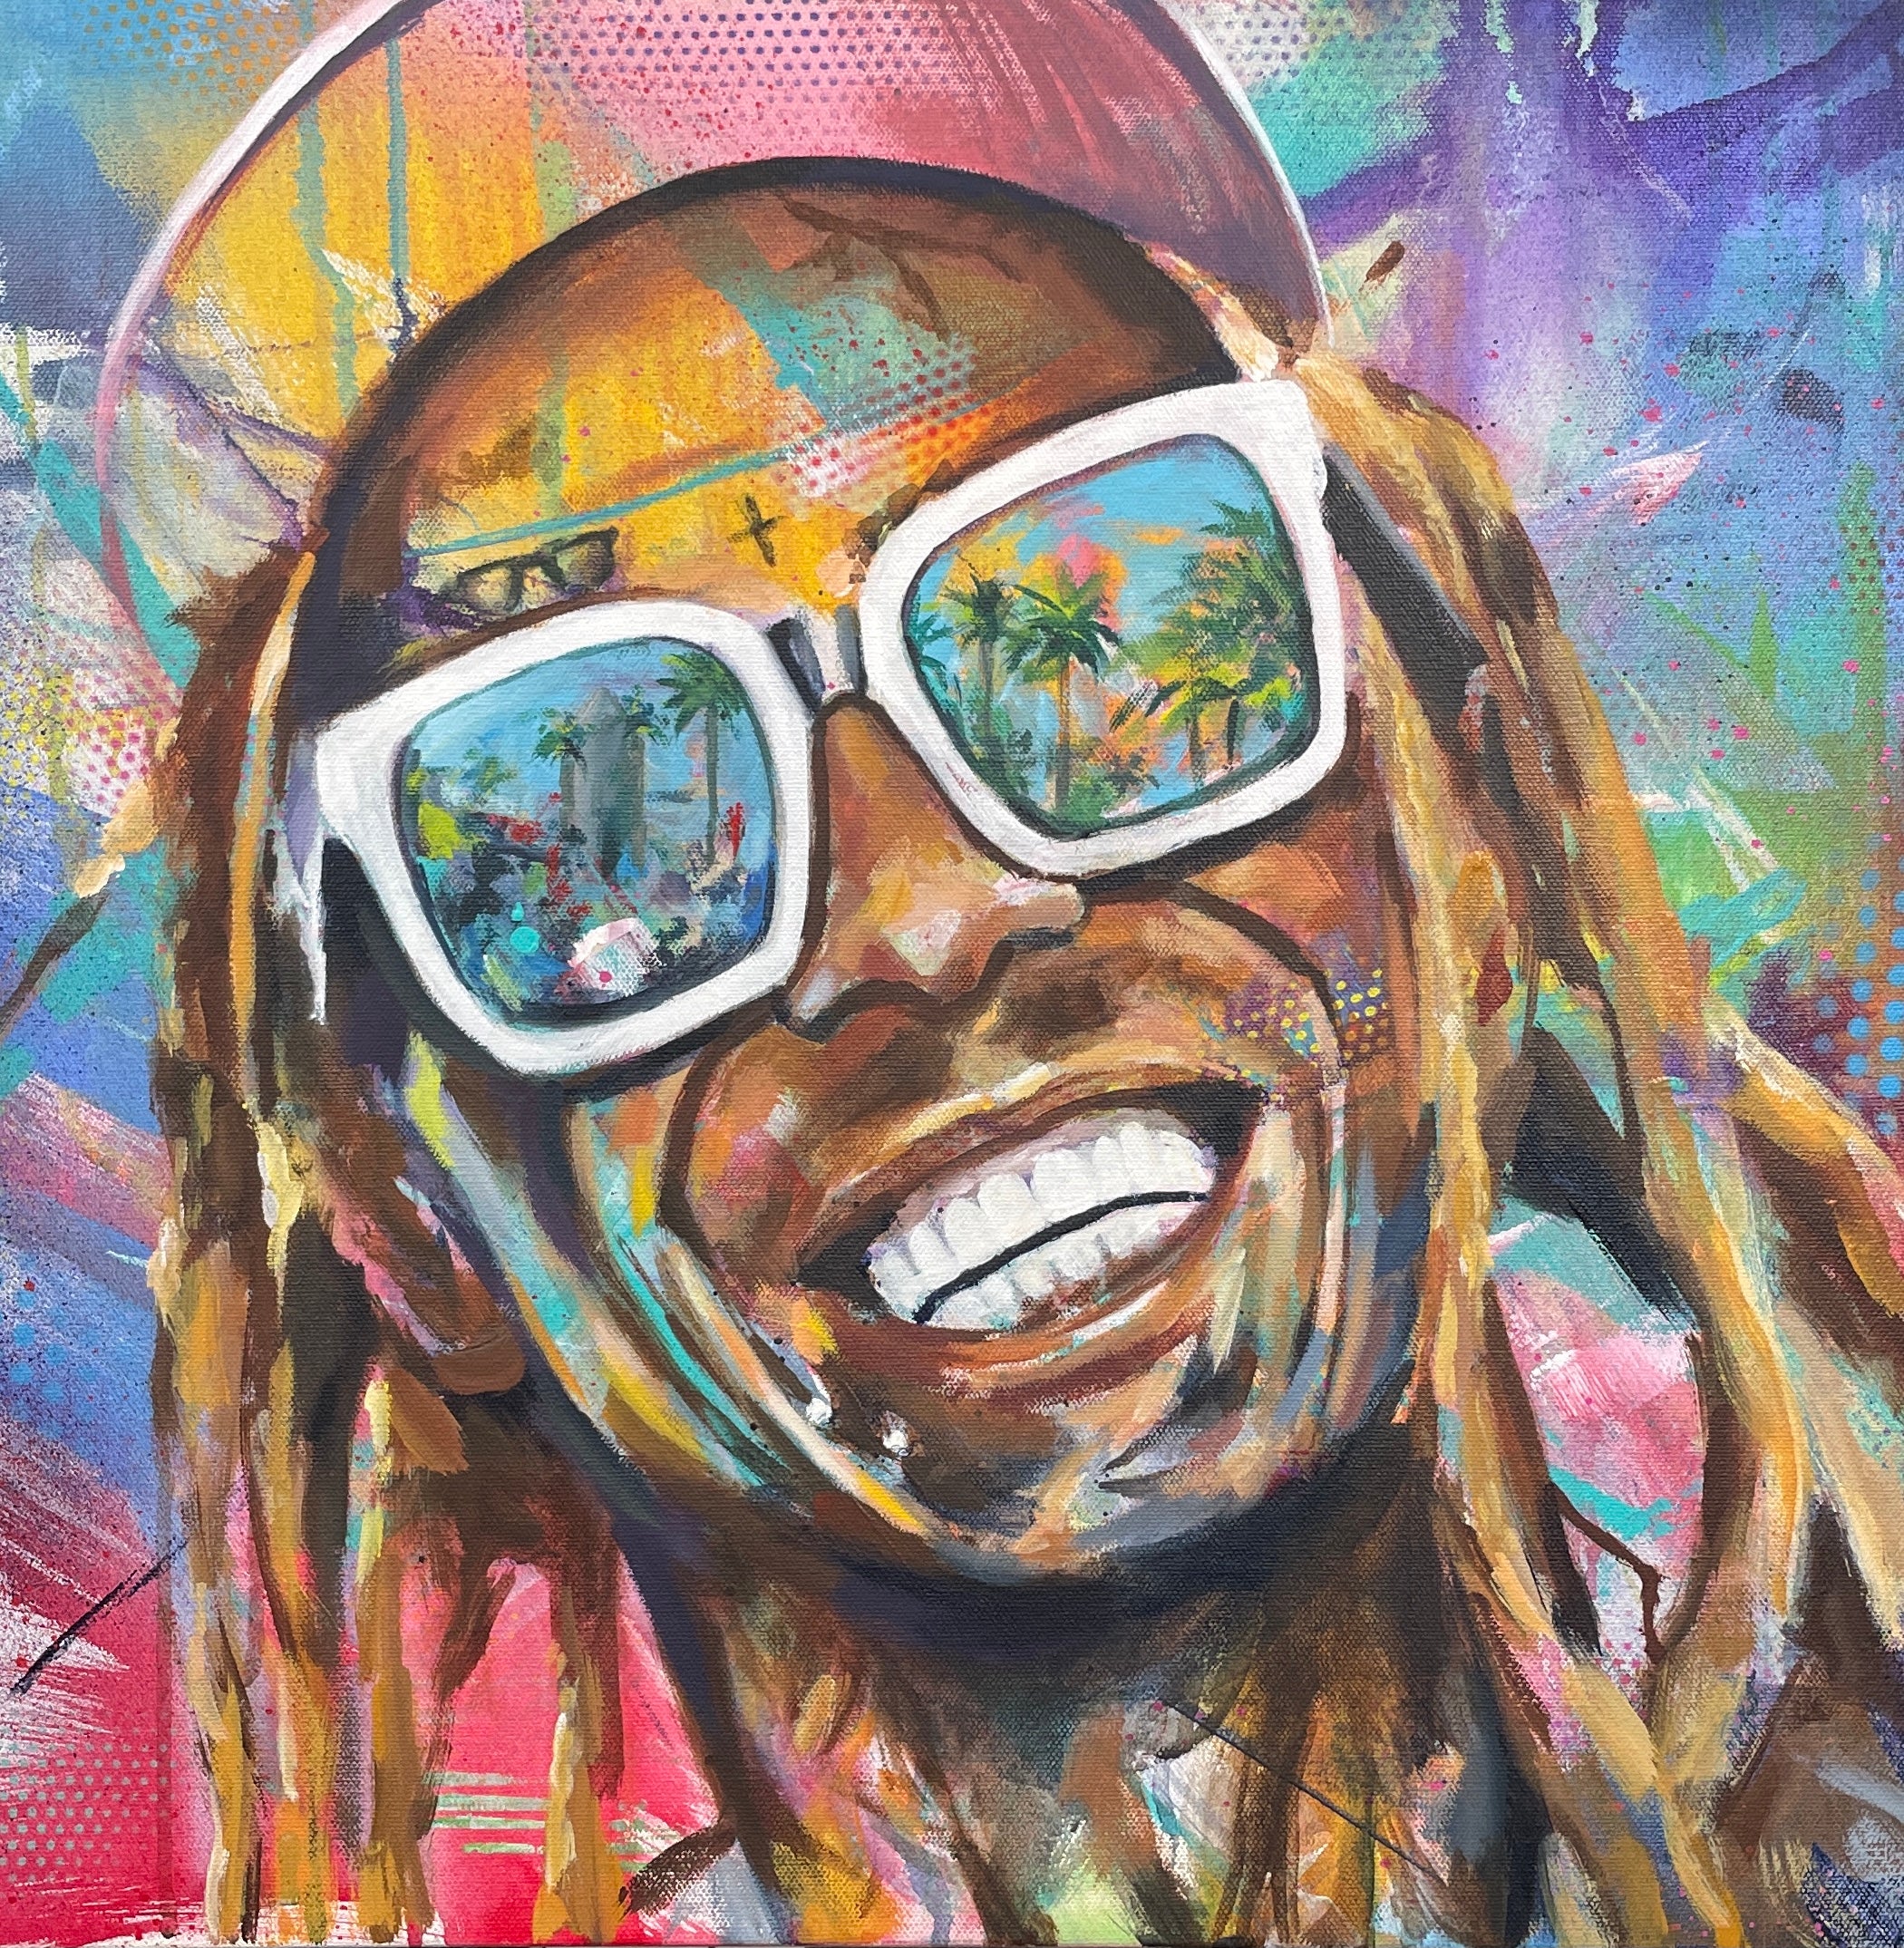 Lil Wayne West Palm Beach